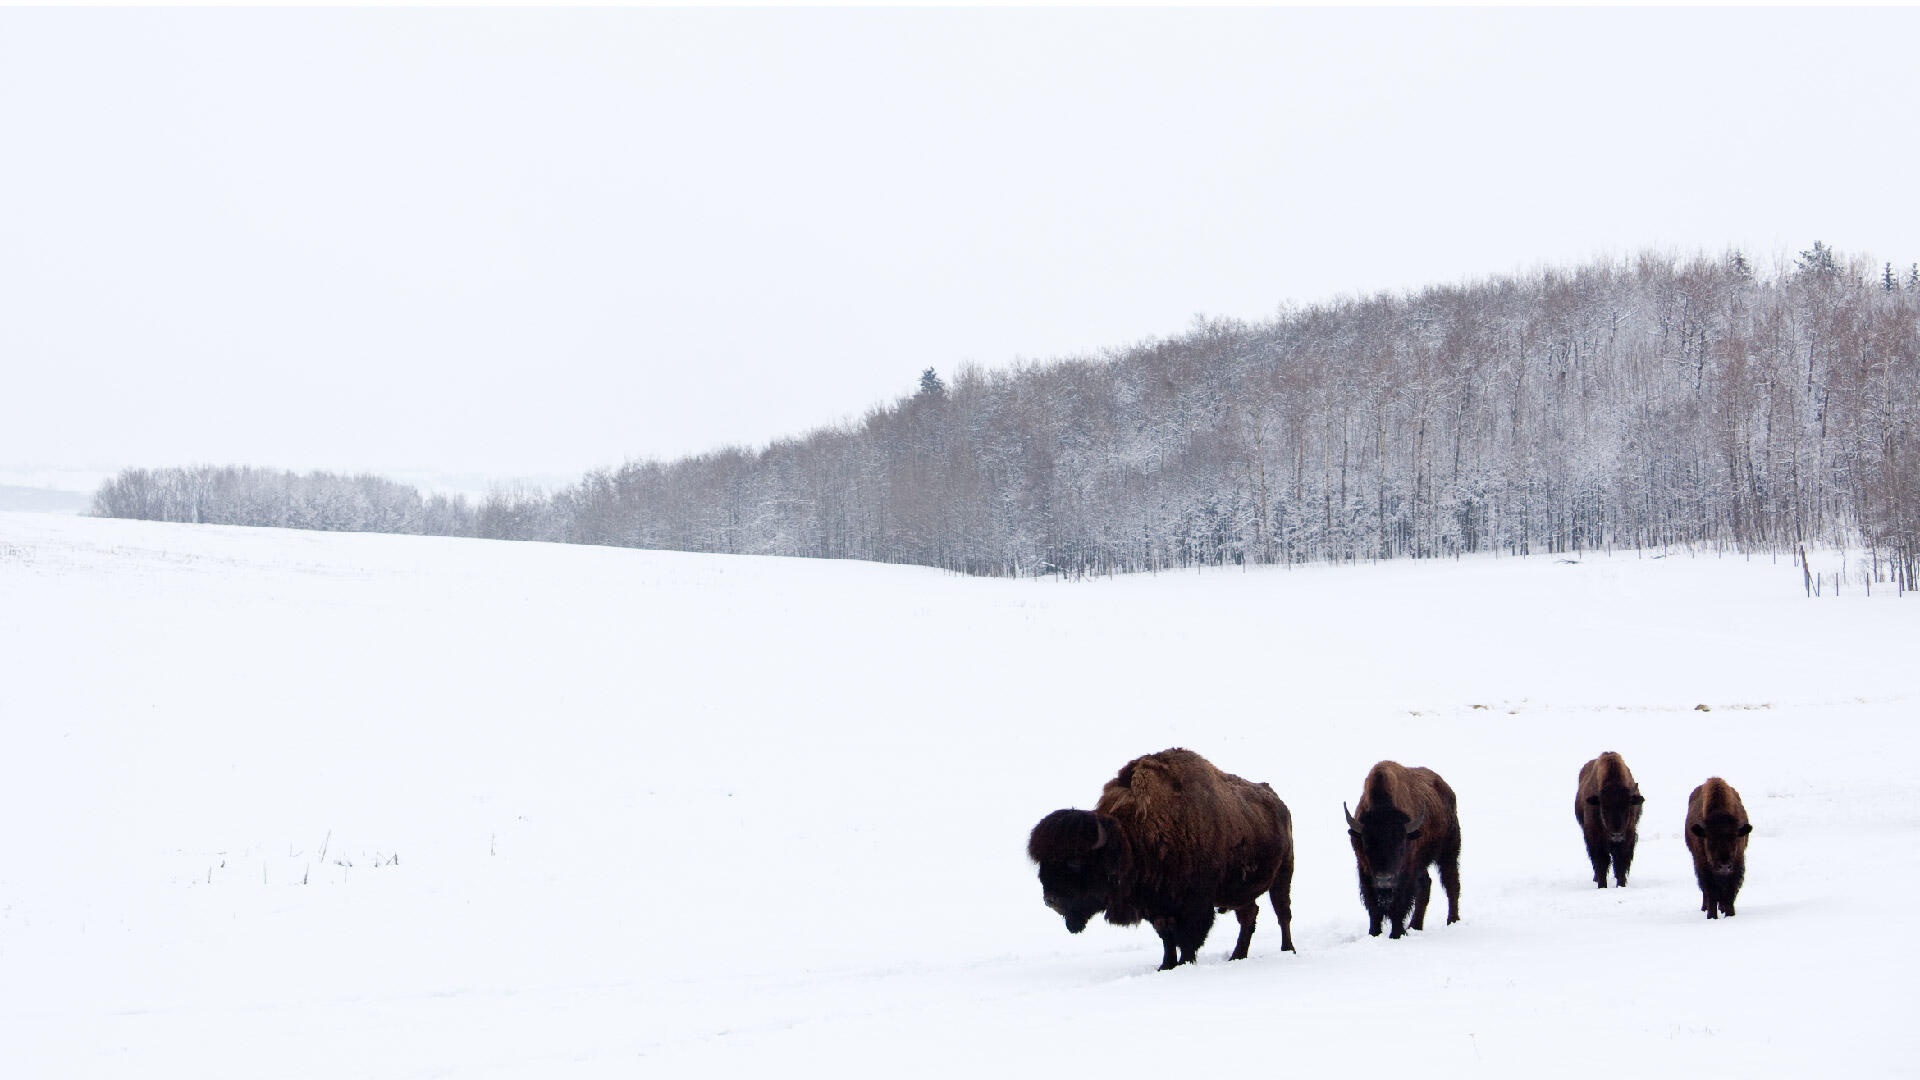 Des bisons marchant dans un champ enneigé.